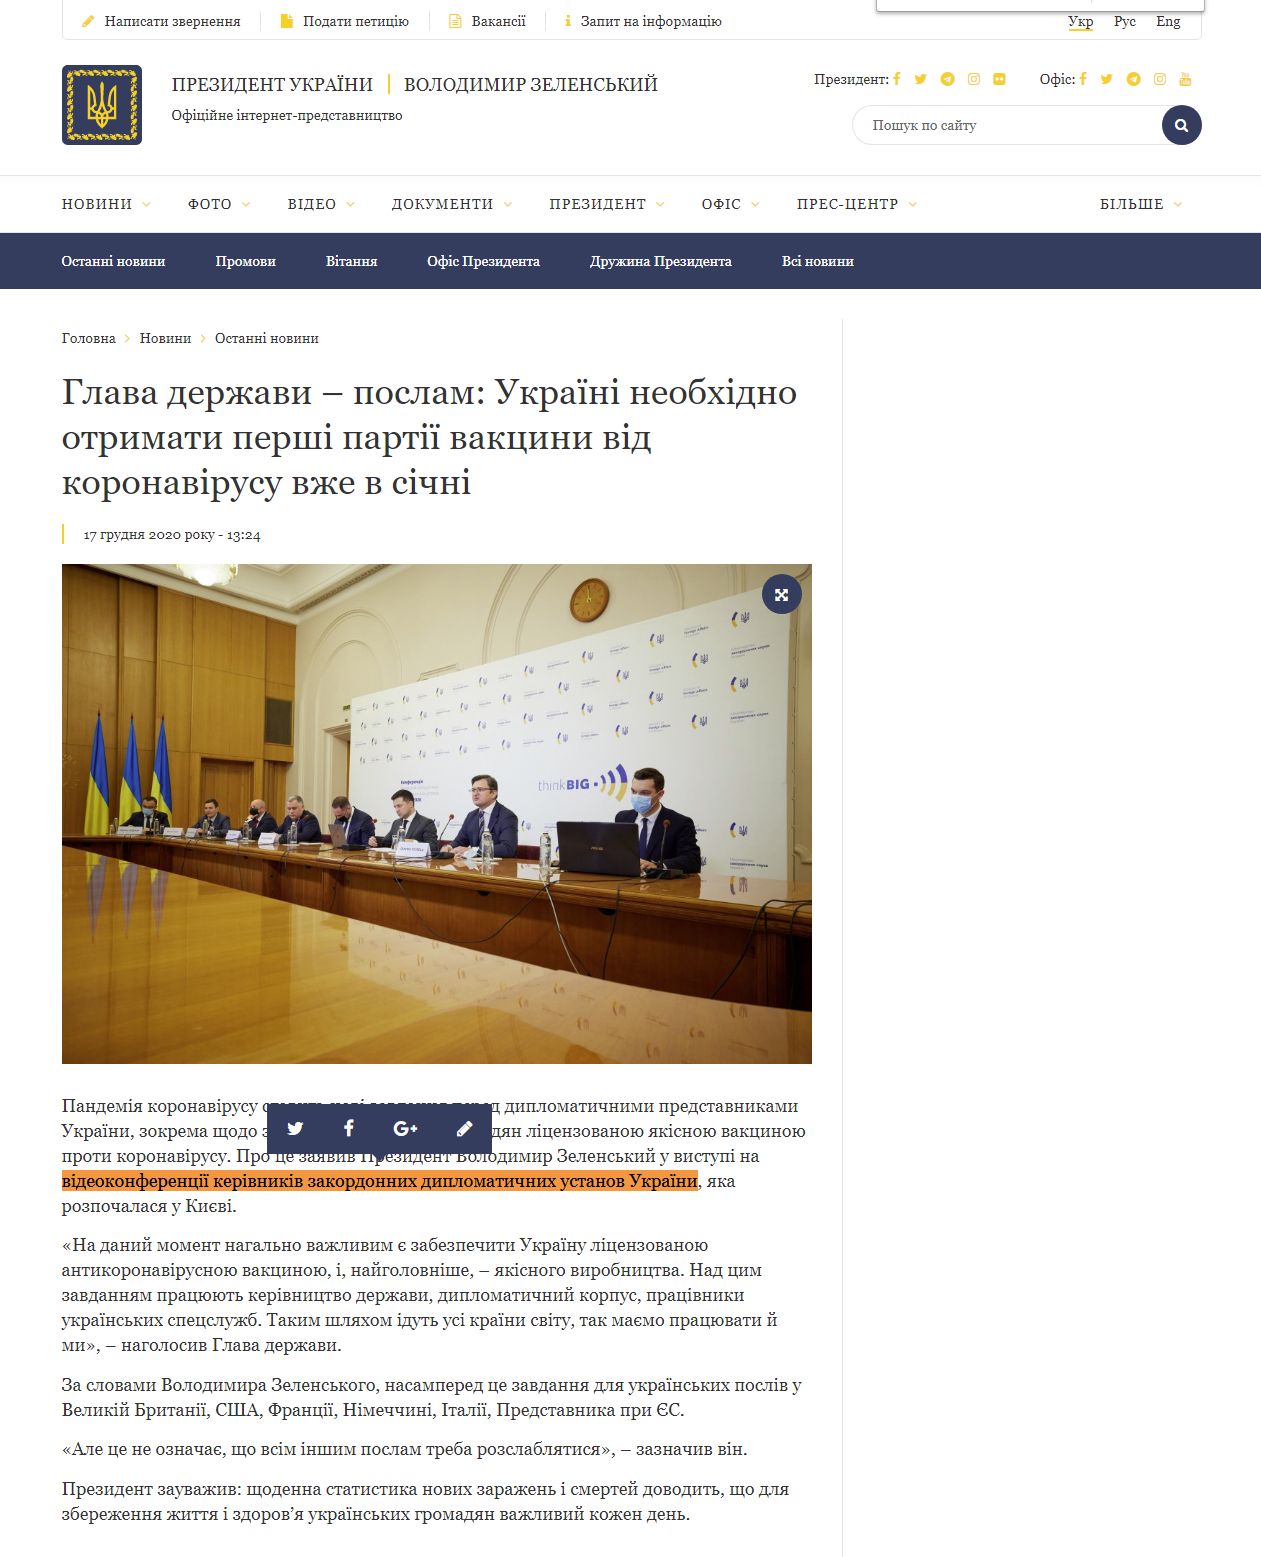 https://www.president.gov.ua/news/glava-derzhavi-poslam-ukrayini-neobhidno-otrimati-pershi-par-65609